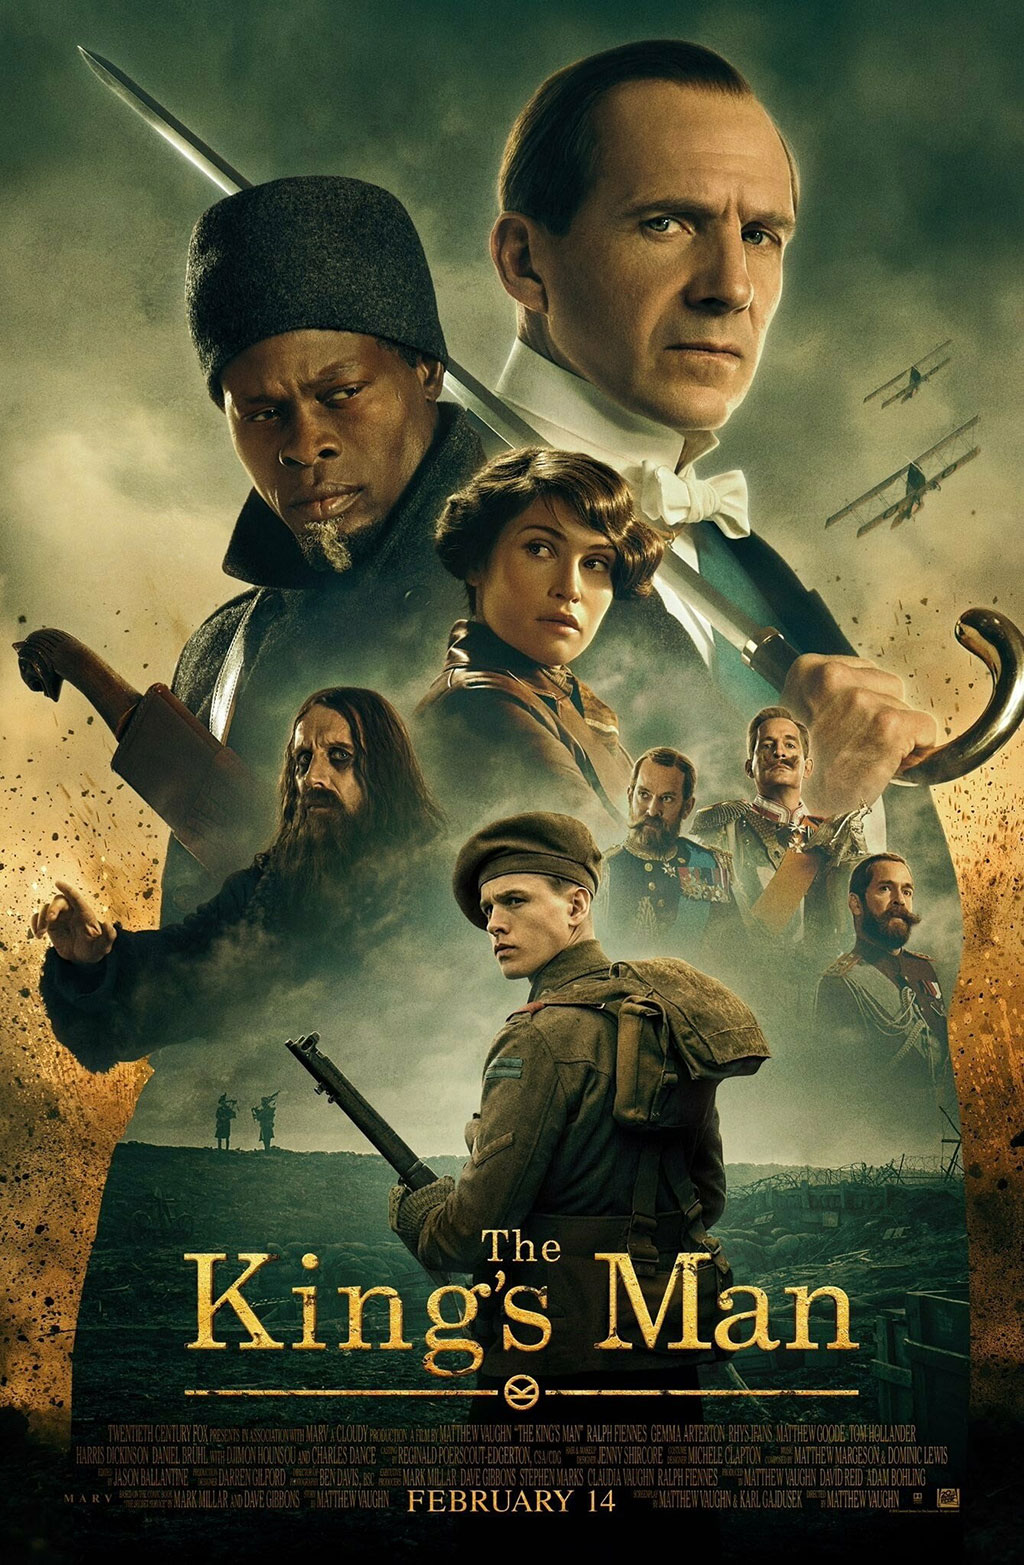  Phần tiền truyện của loạt phim Kingsman nghiêm túc và đen tối hơn so với hai phần phim ra mắt trước đó - Ảnh: 20th Century Fox